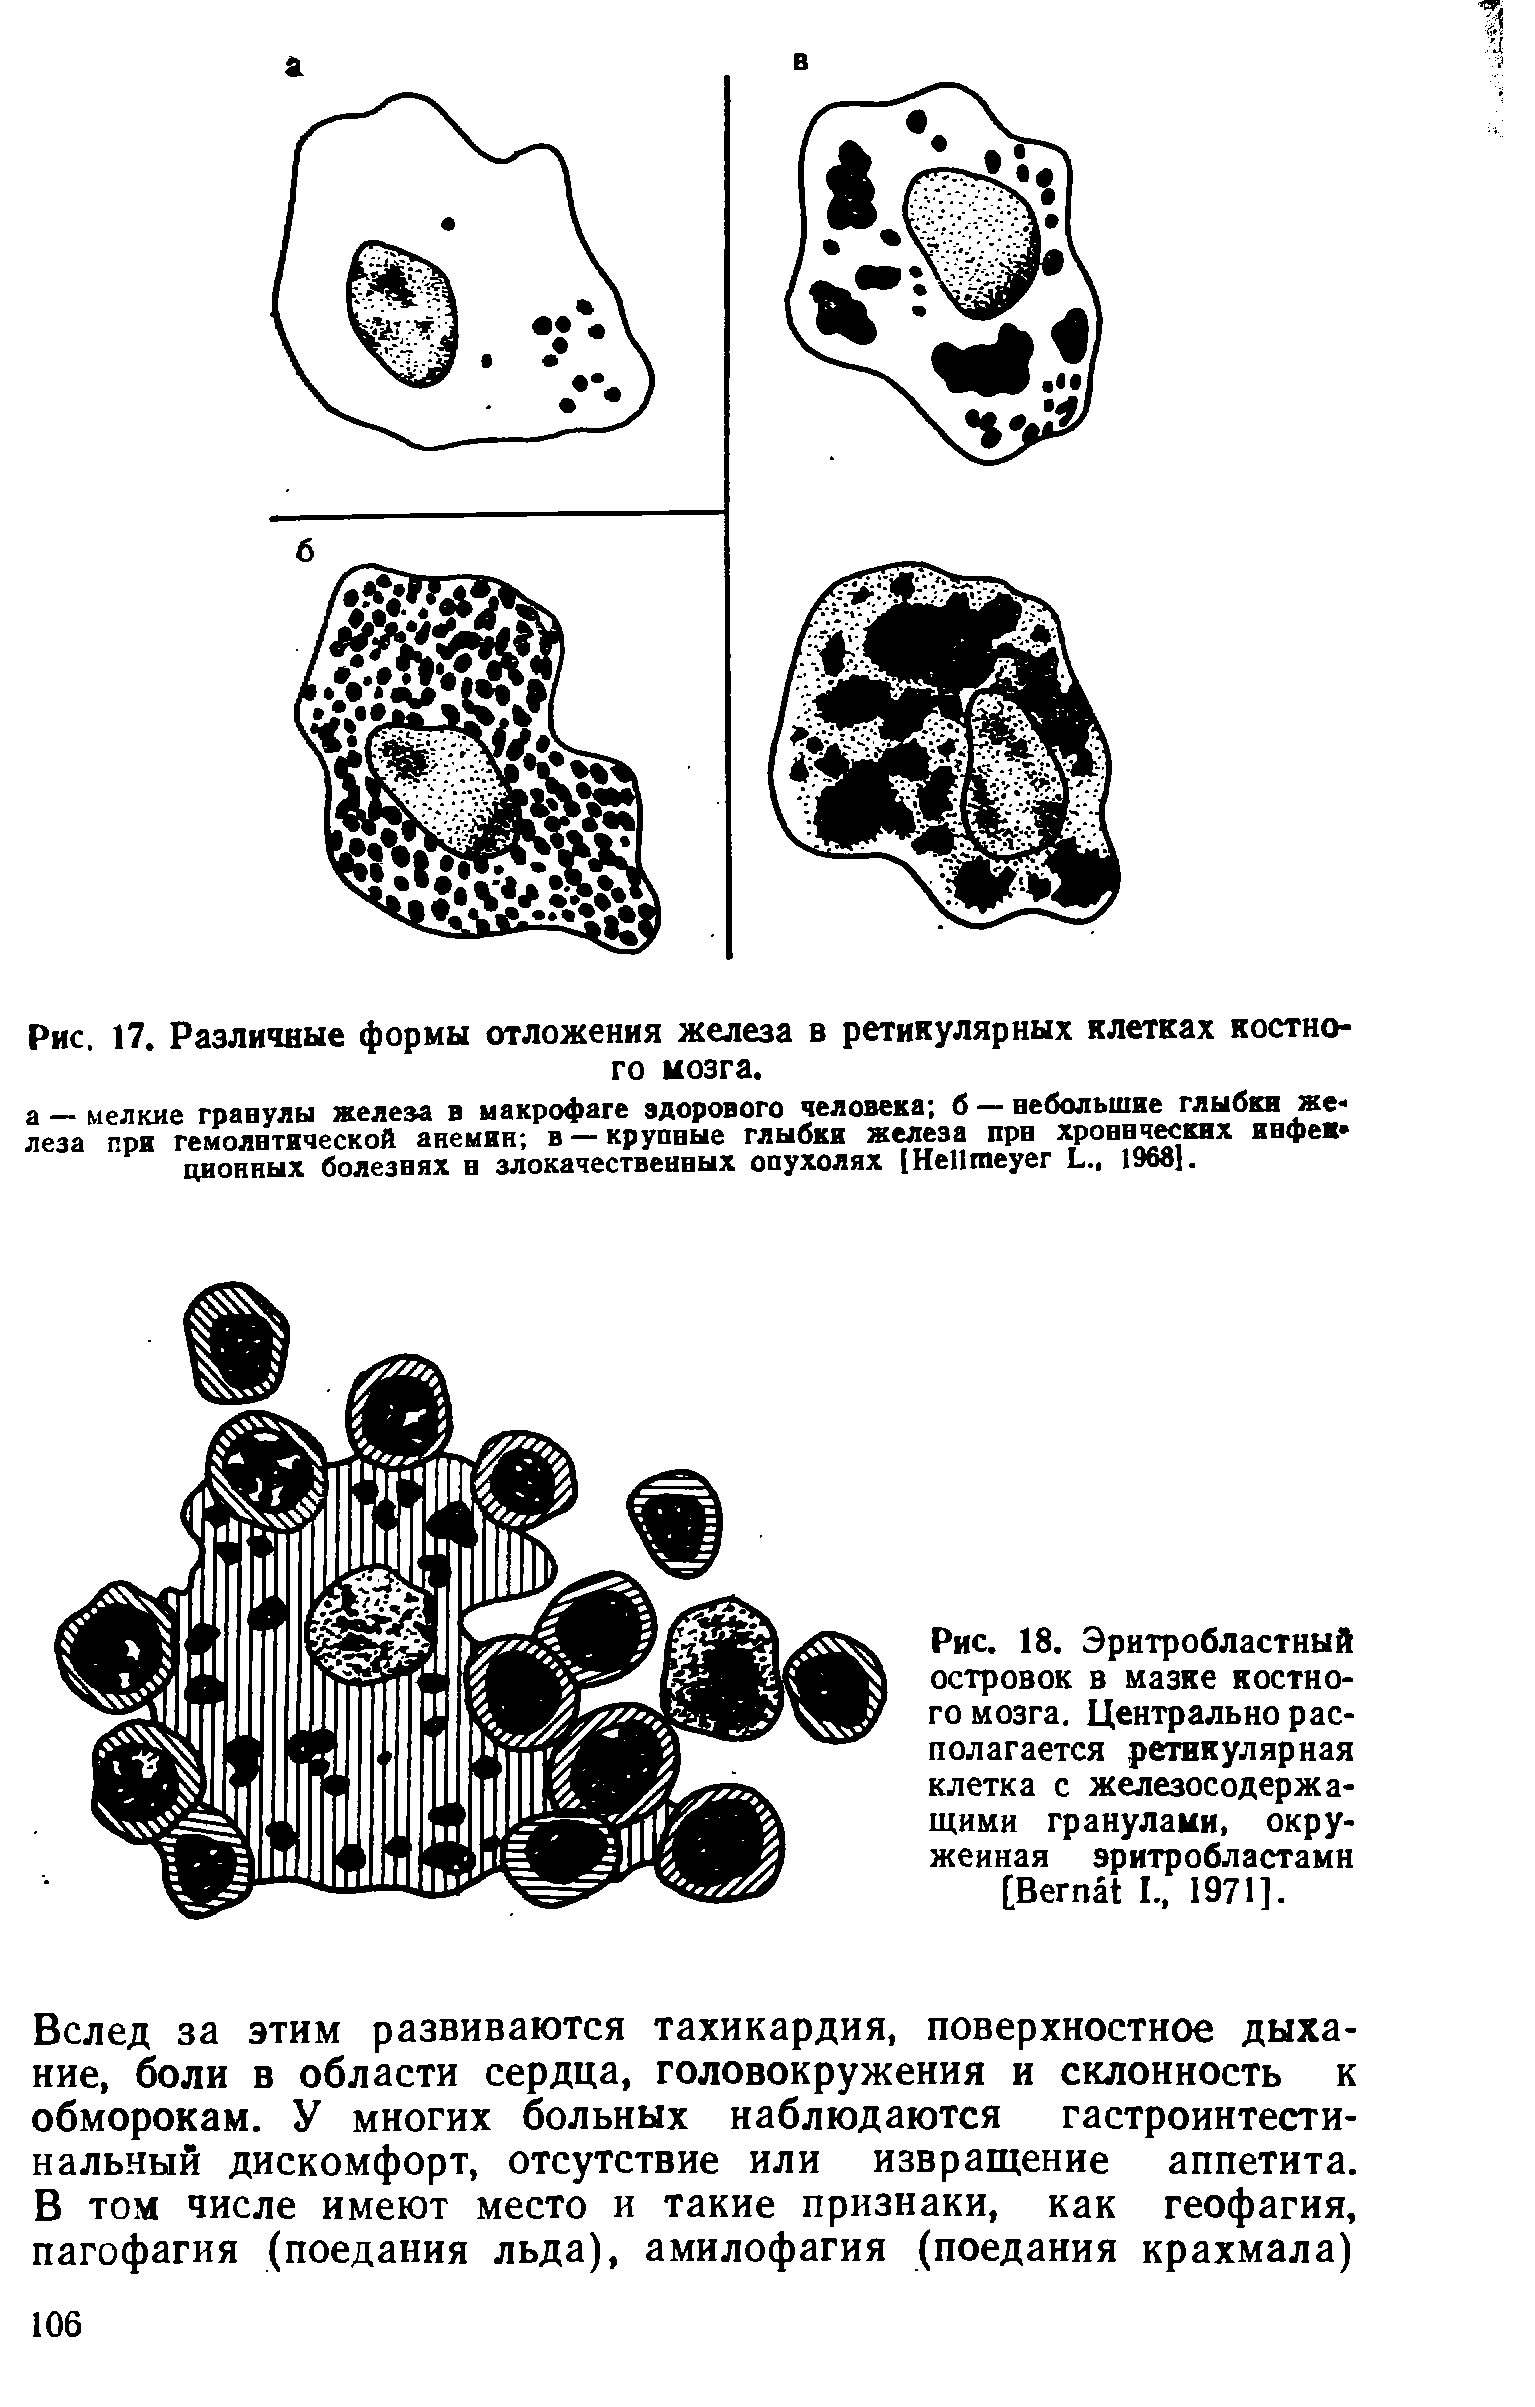 Рис. 18. Эритробластный островок в мазке костного мозга. Центрально располагается ретикулярная клетка с железосодержащими гранулами, окруженная эритробластами [B I., 1971].